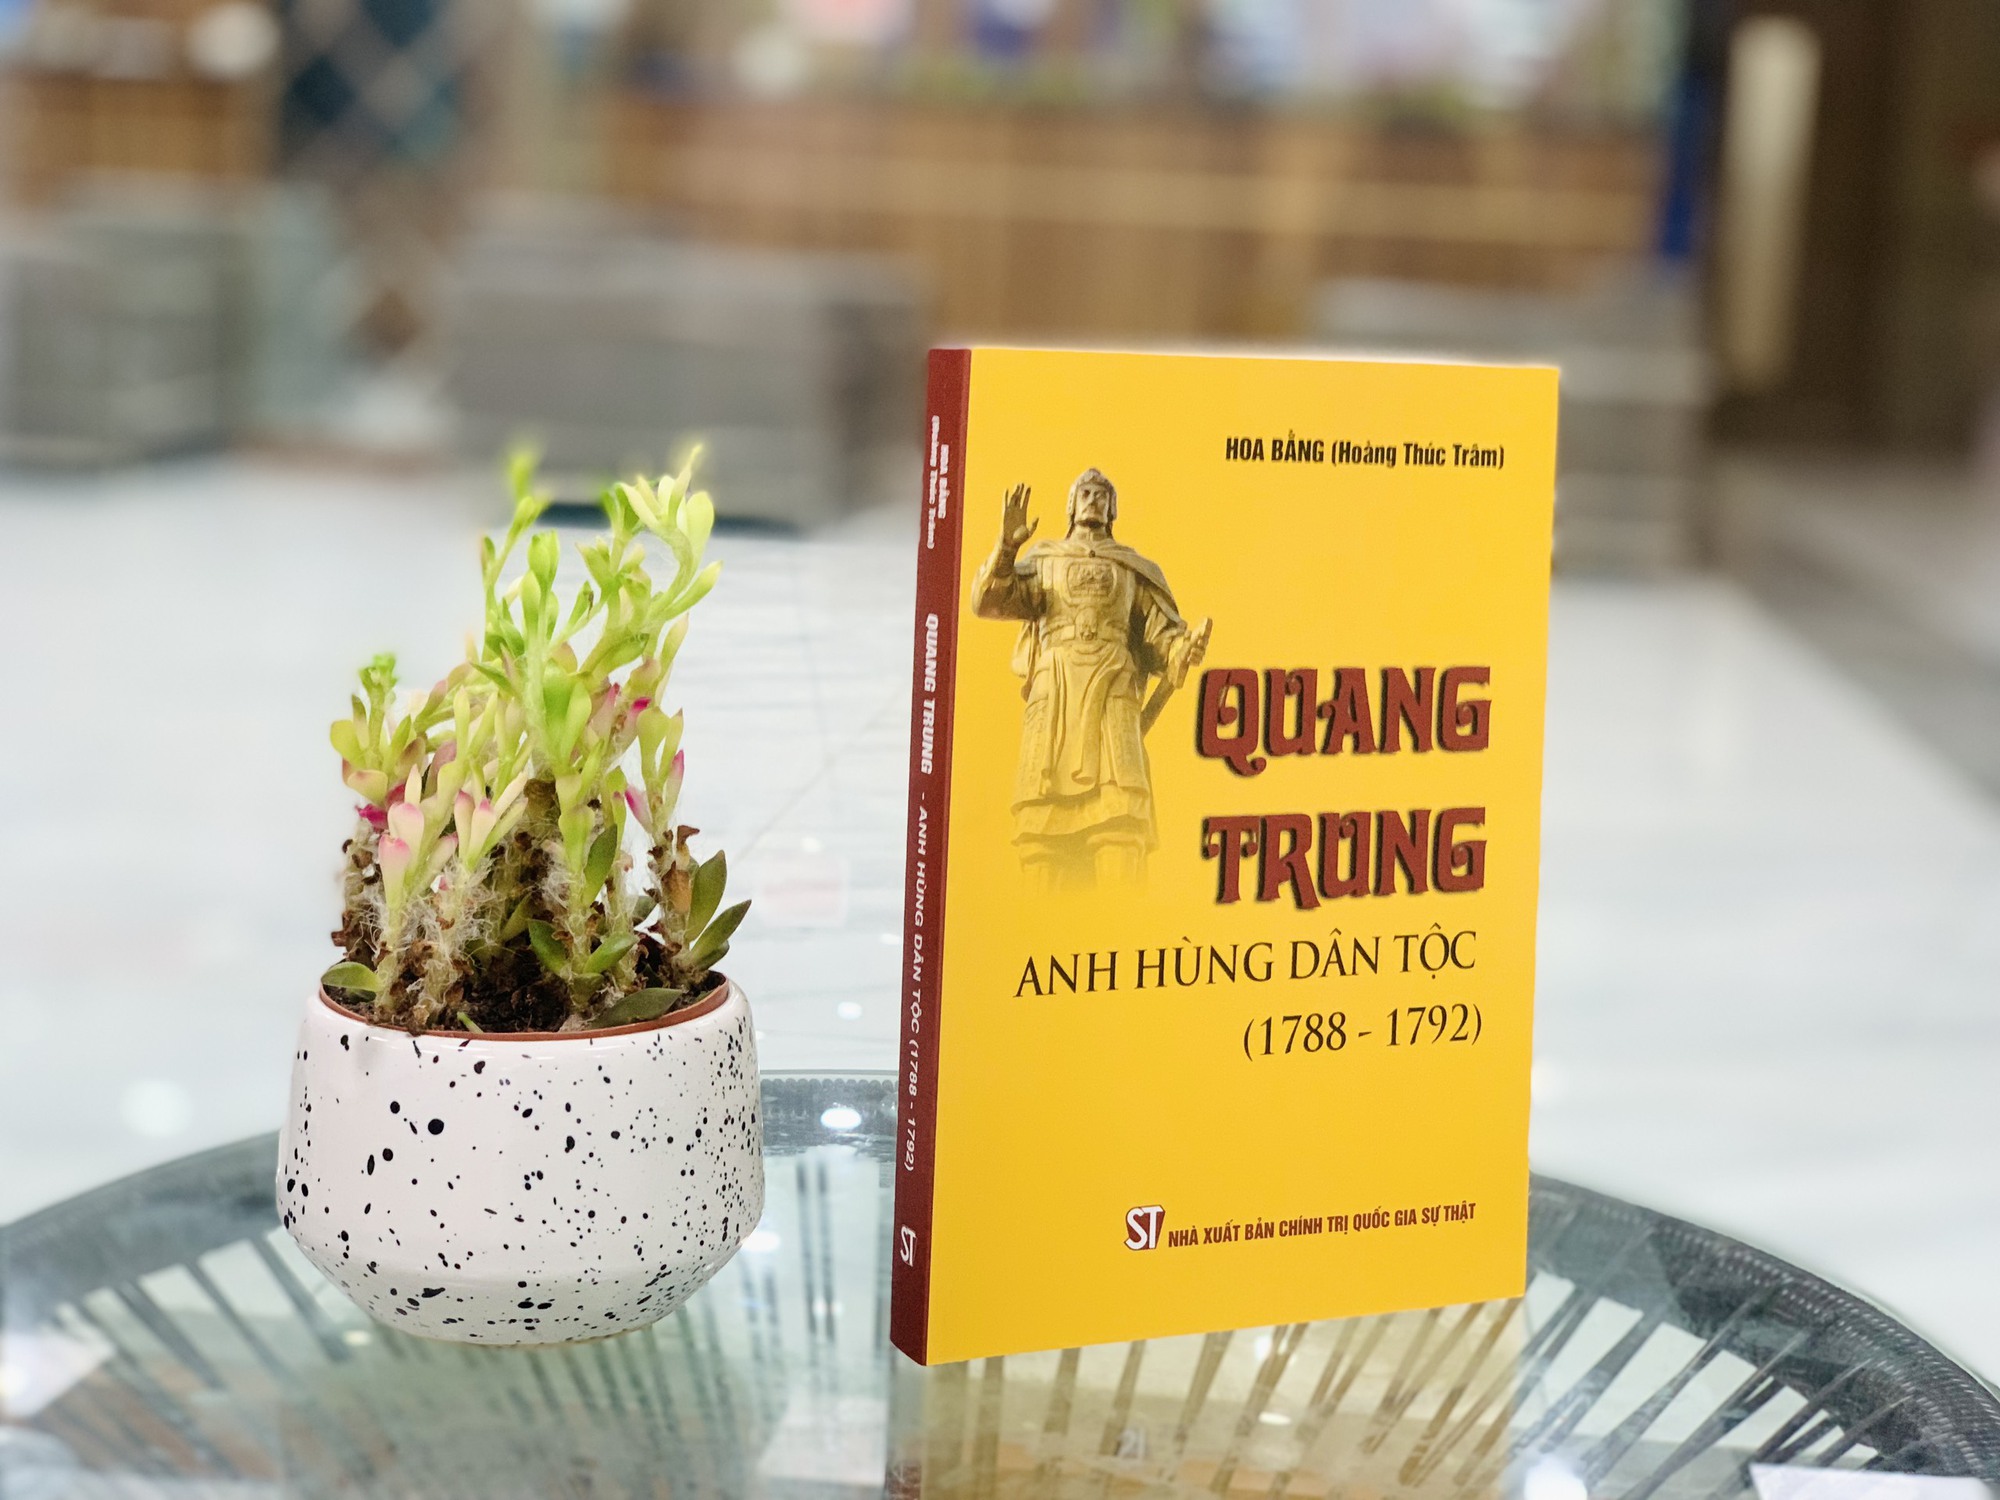 Nhiều bí ẩn lịch sử về anh hùng Quang Trung được giải mã trong sách của Hoa Bằng - Ảnh 1.